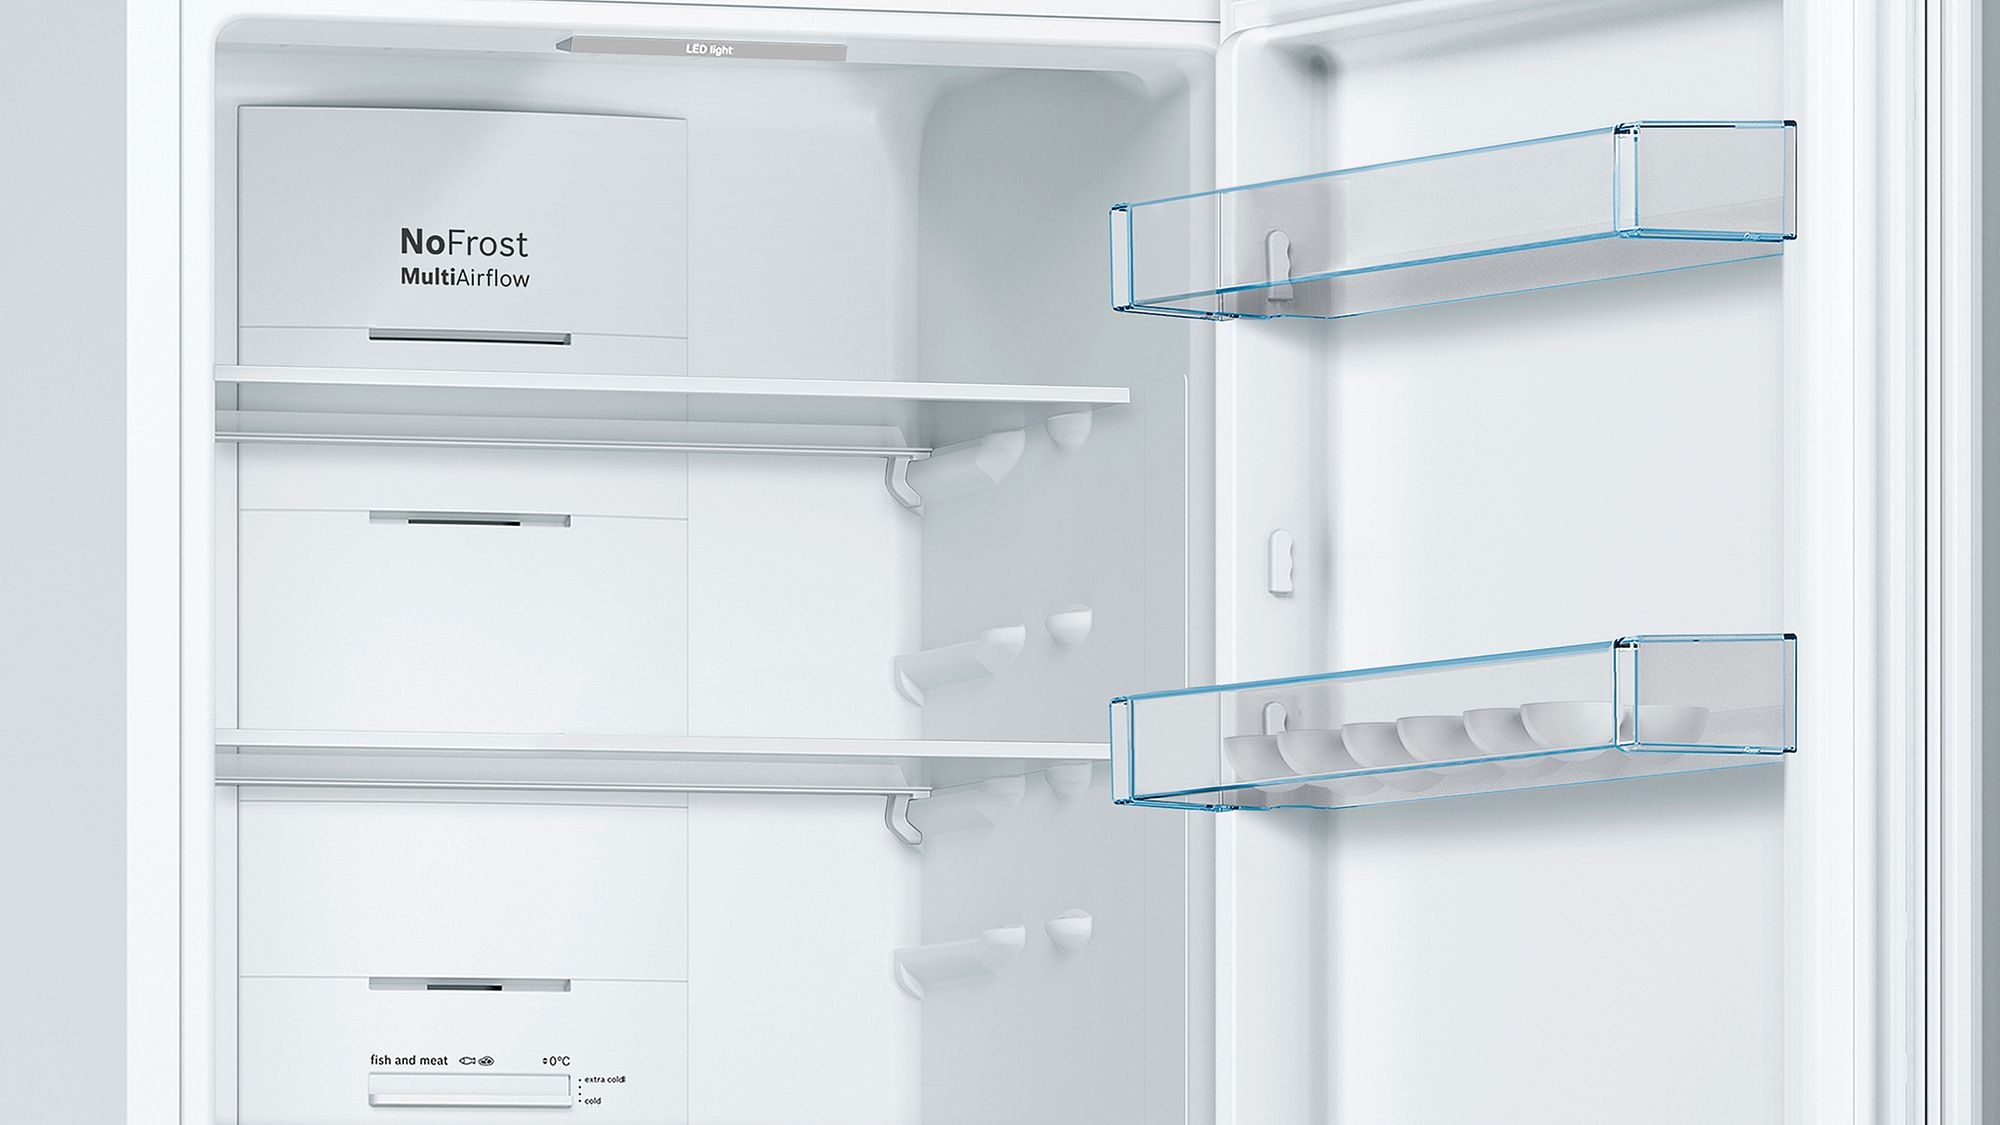 Холодильник Bosch KGN36XW30U